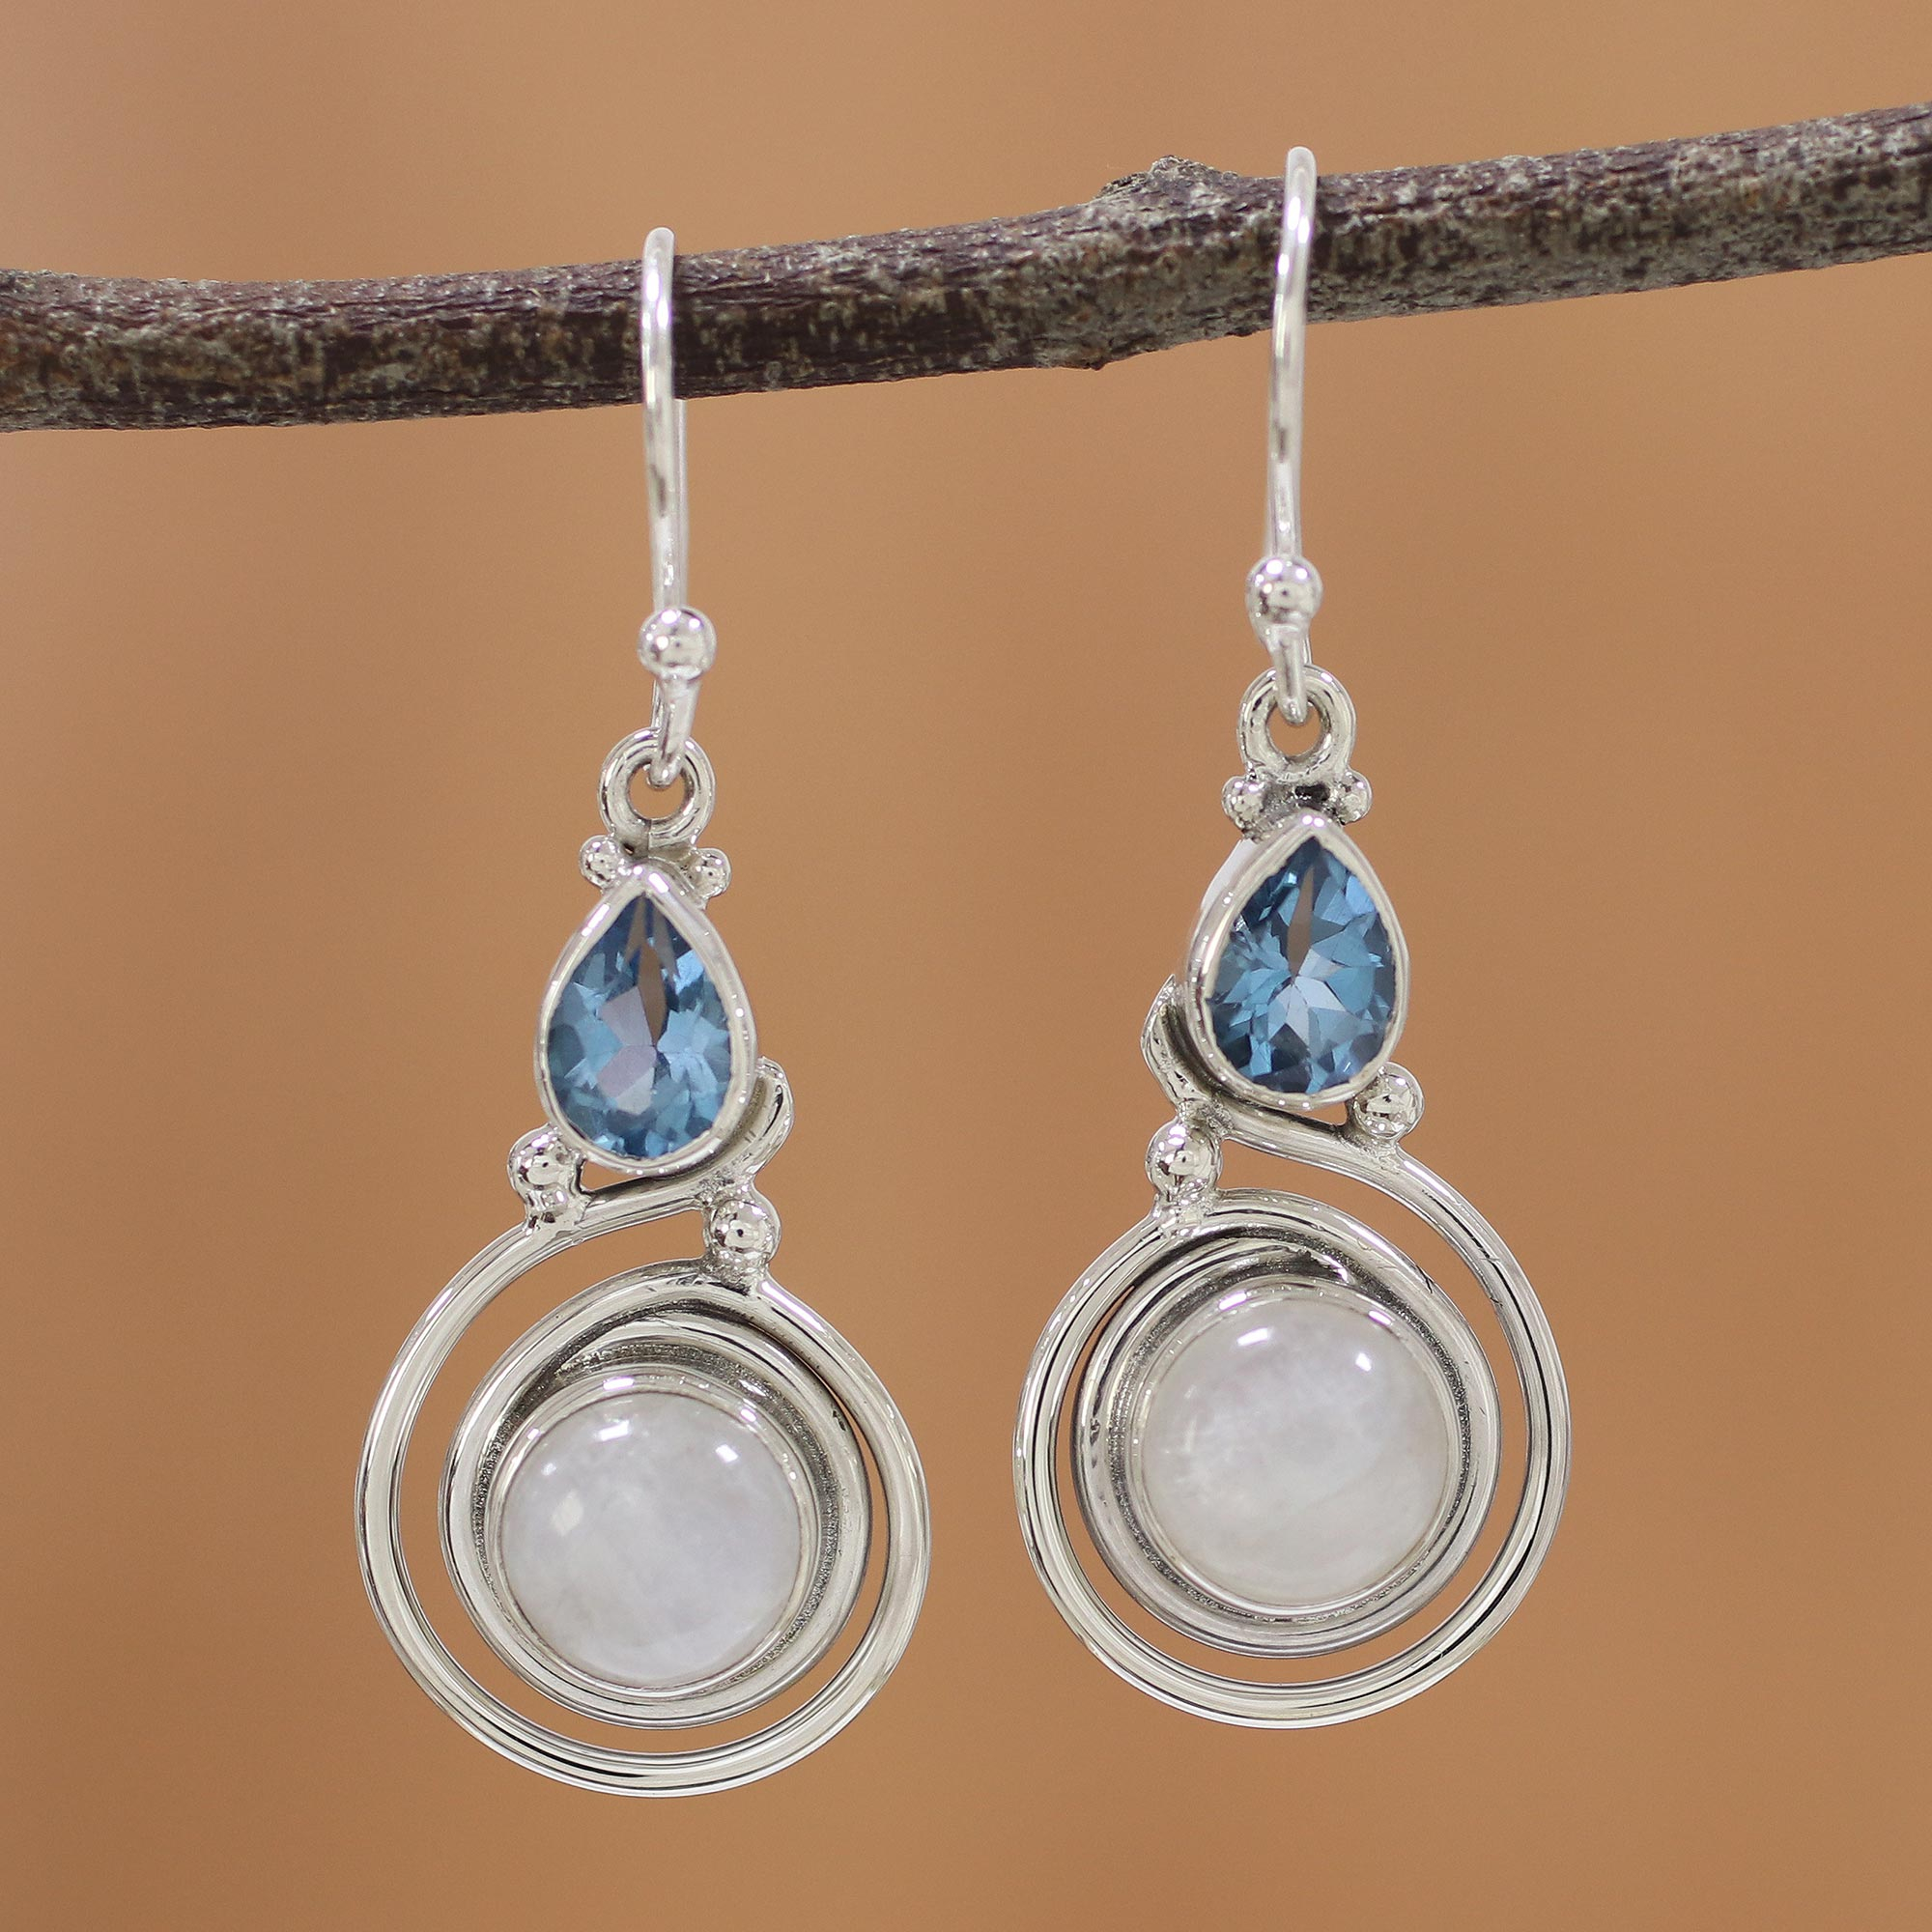 Handmade Earring Dangle Earring Woman Earring, Moonstone Earring Blue Topaz Earring Gemstone Earring 925 Sterling Silver Earring